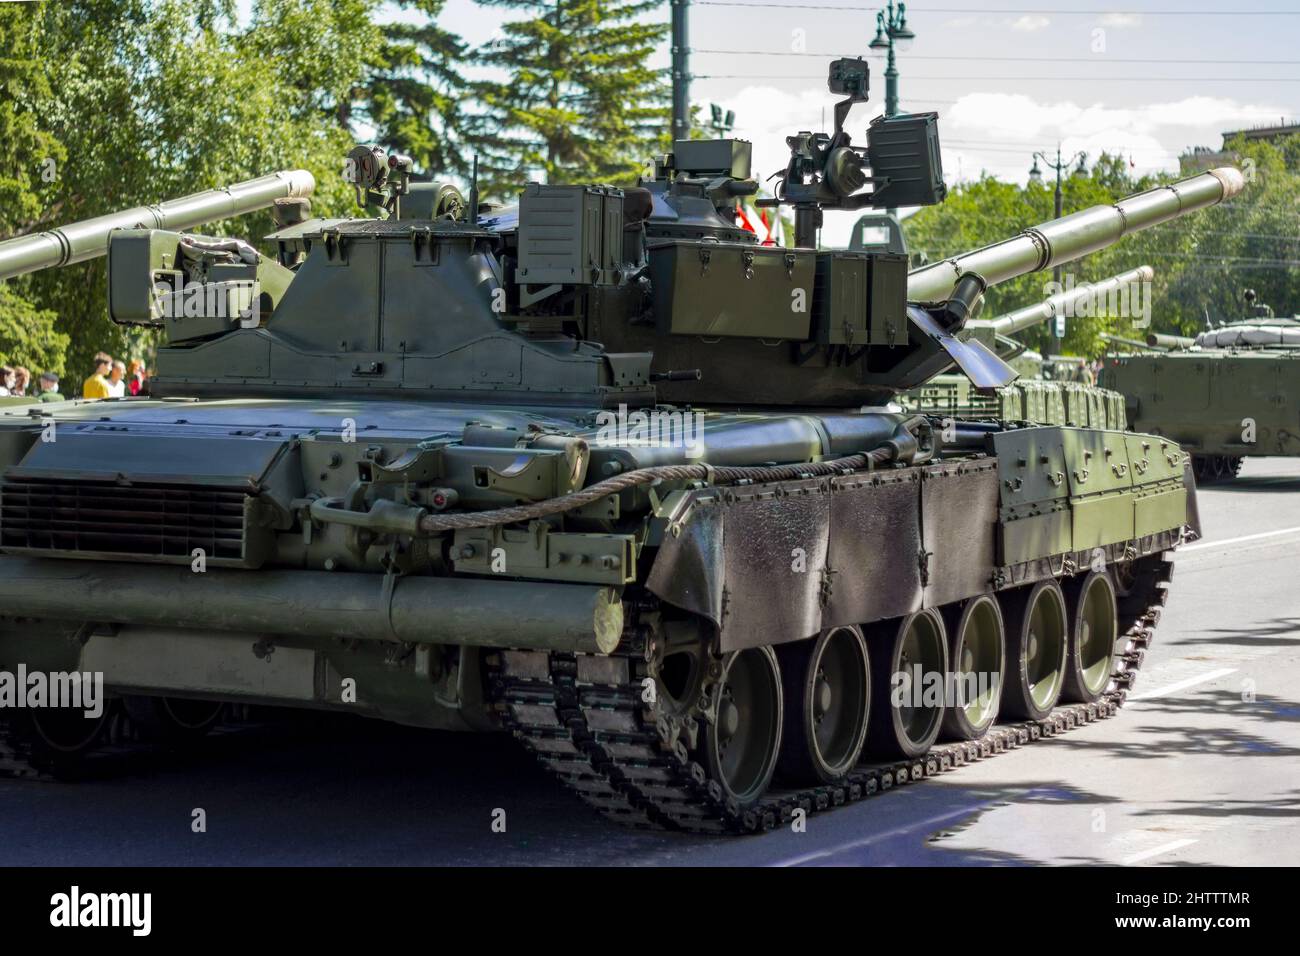 Veicoli militari russi sulla strada della città. Russo moderno carro armato militare e fanteria veicolo da combattimento BMP. Foto Stock